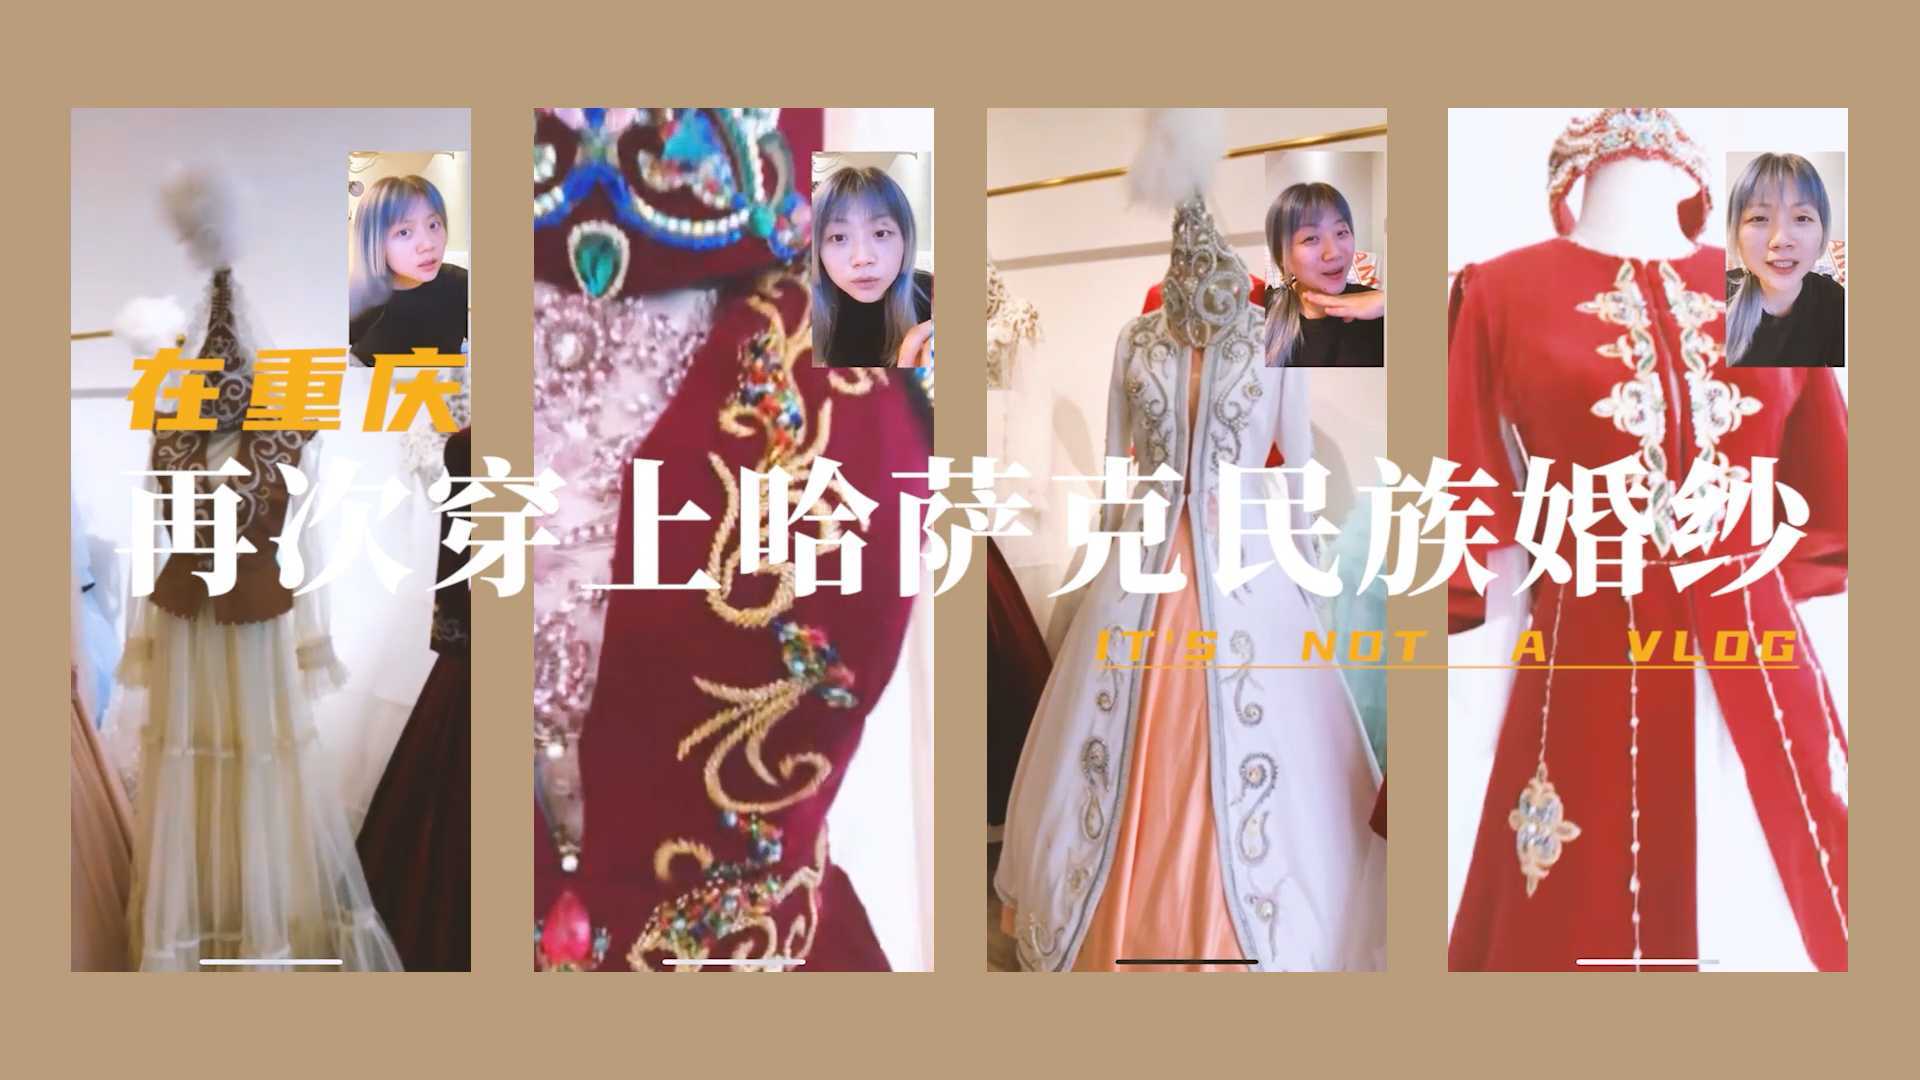 在重庆穿上哈萨克民族婚纱啦 - 哈萨克民族婚纱开箱